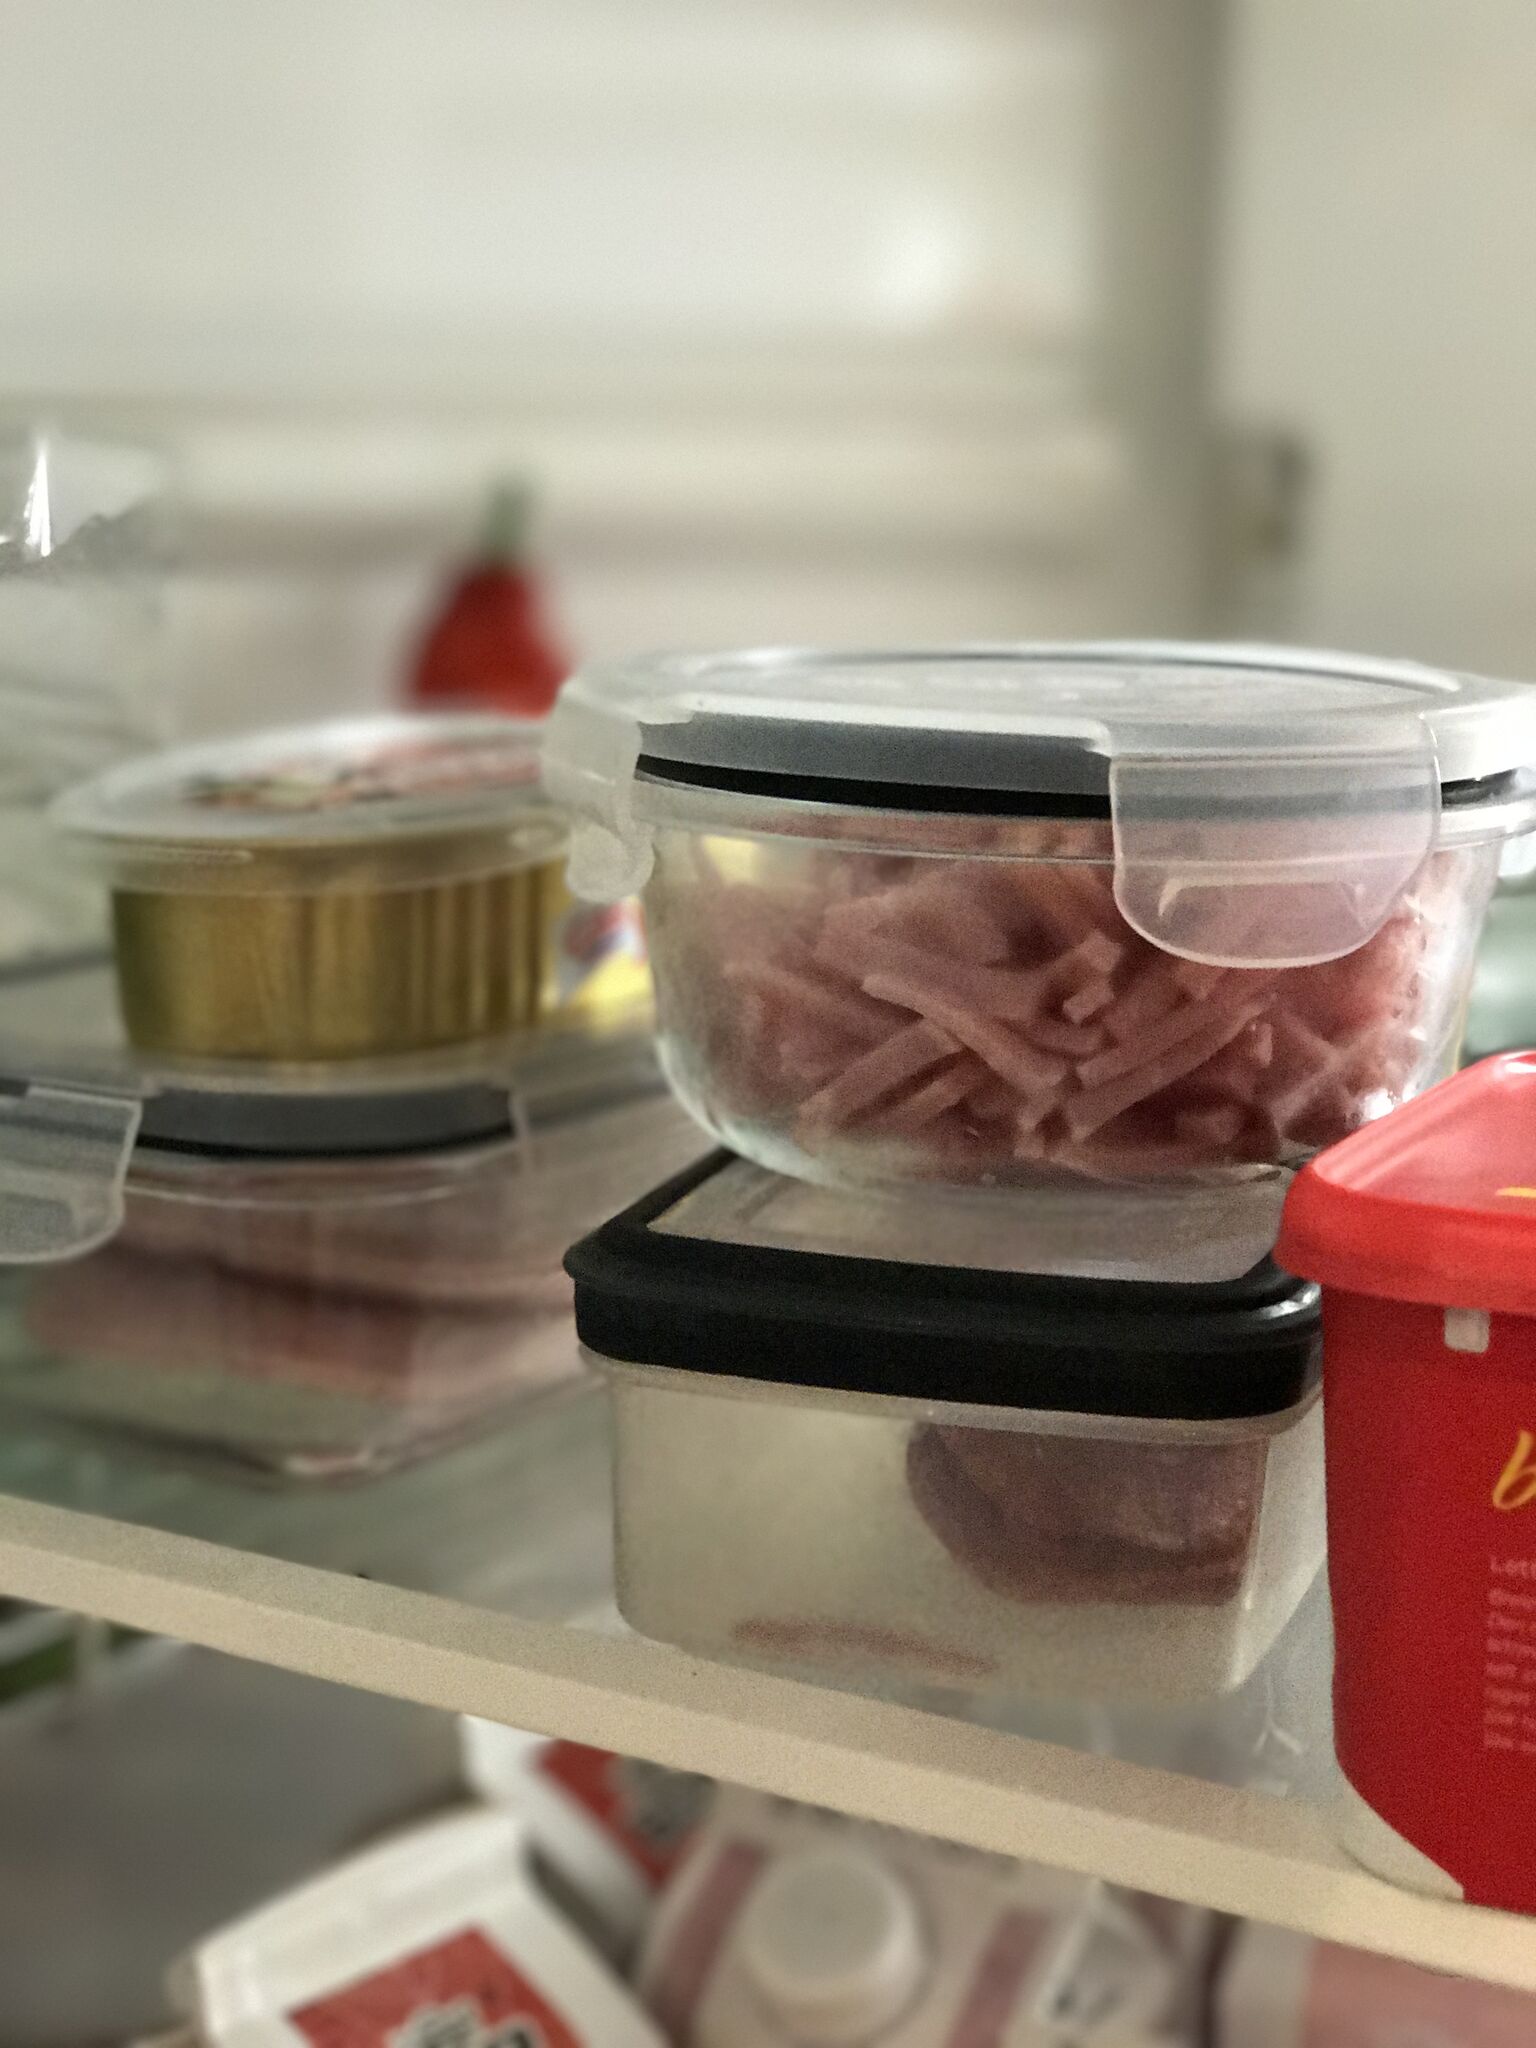 PÅ BOKS: Matbloggeren er flink til å legge matvarer over i plastbokser når pakningen er åpnet. Foto: Privat